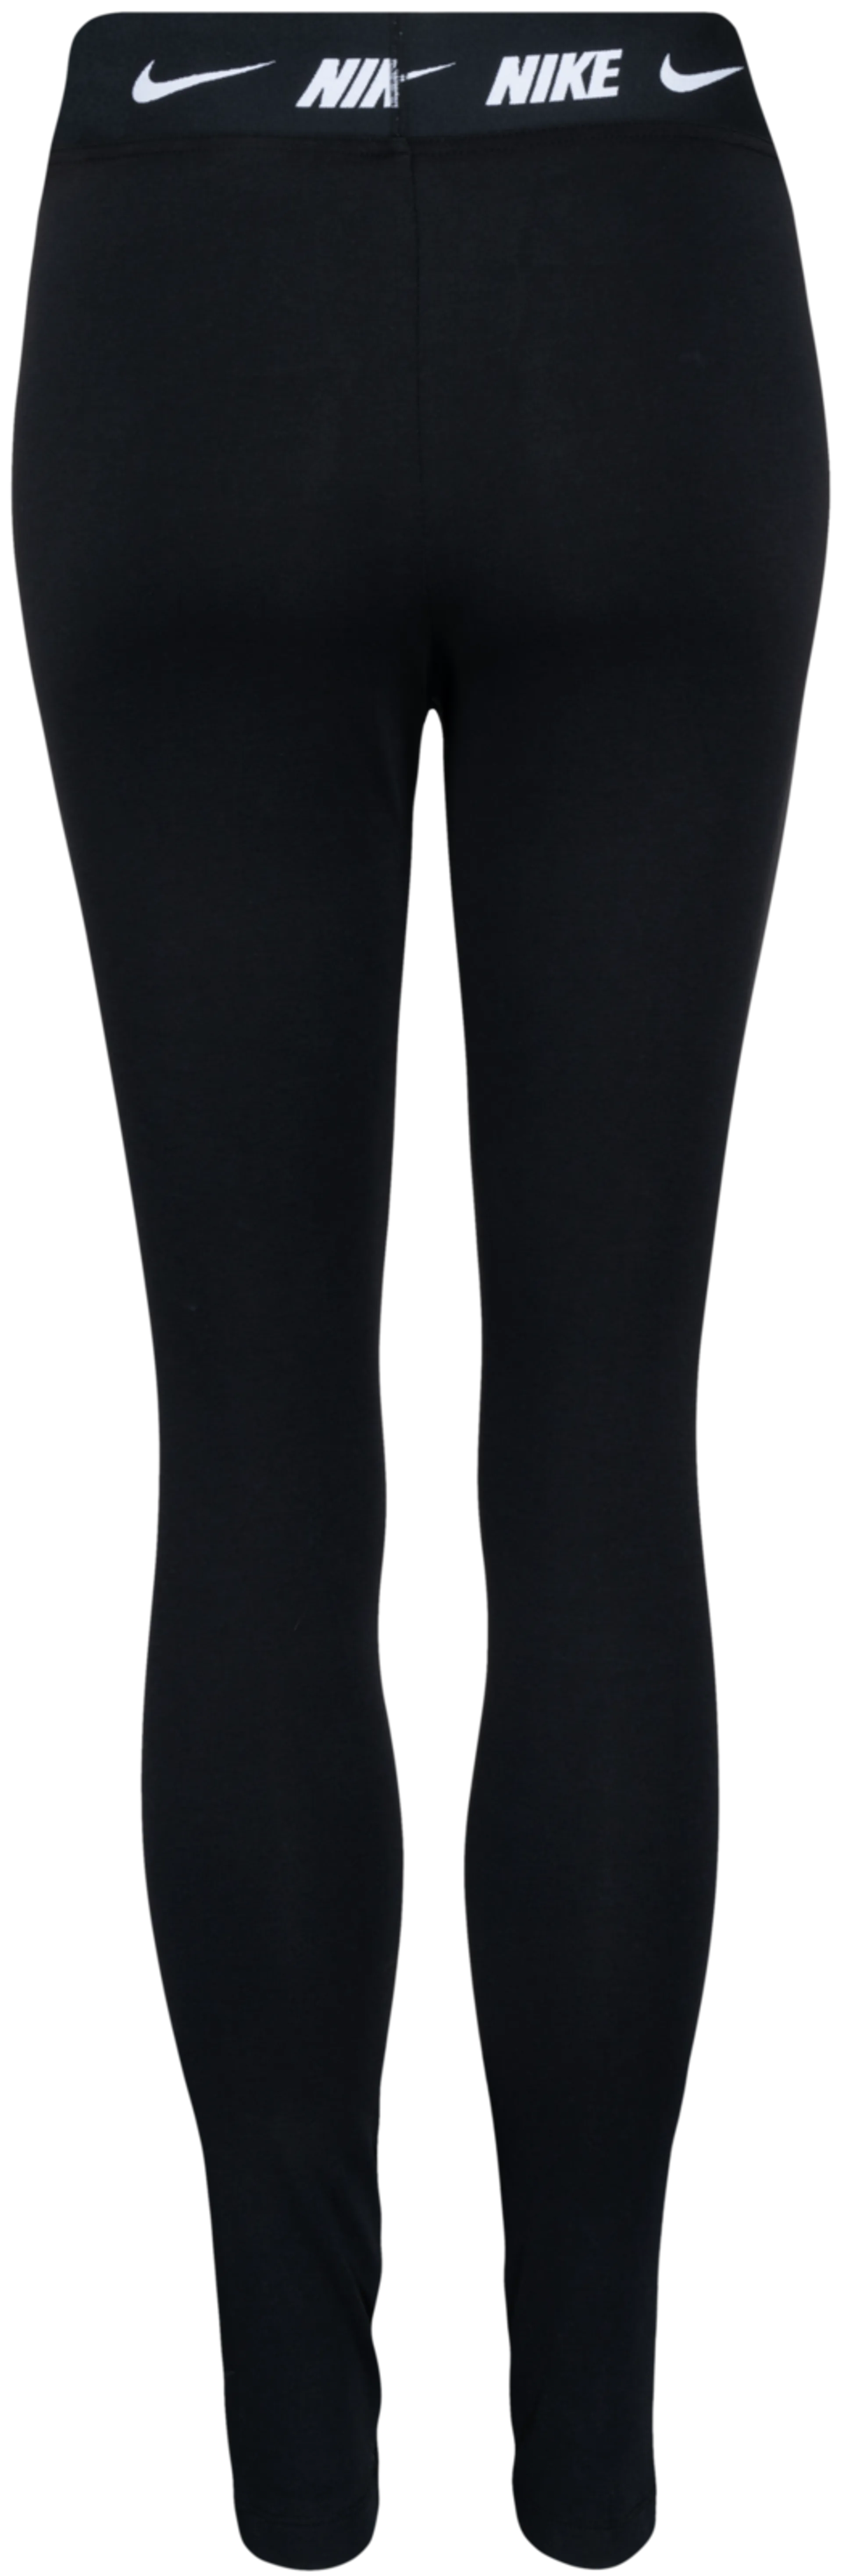 Nike naisten leggingsit DM4651-010 - BLACK - 2